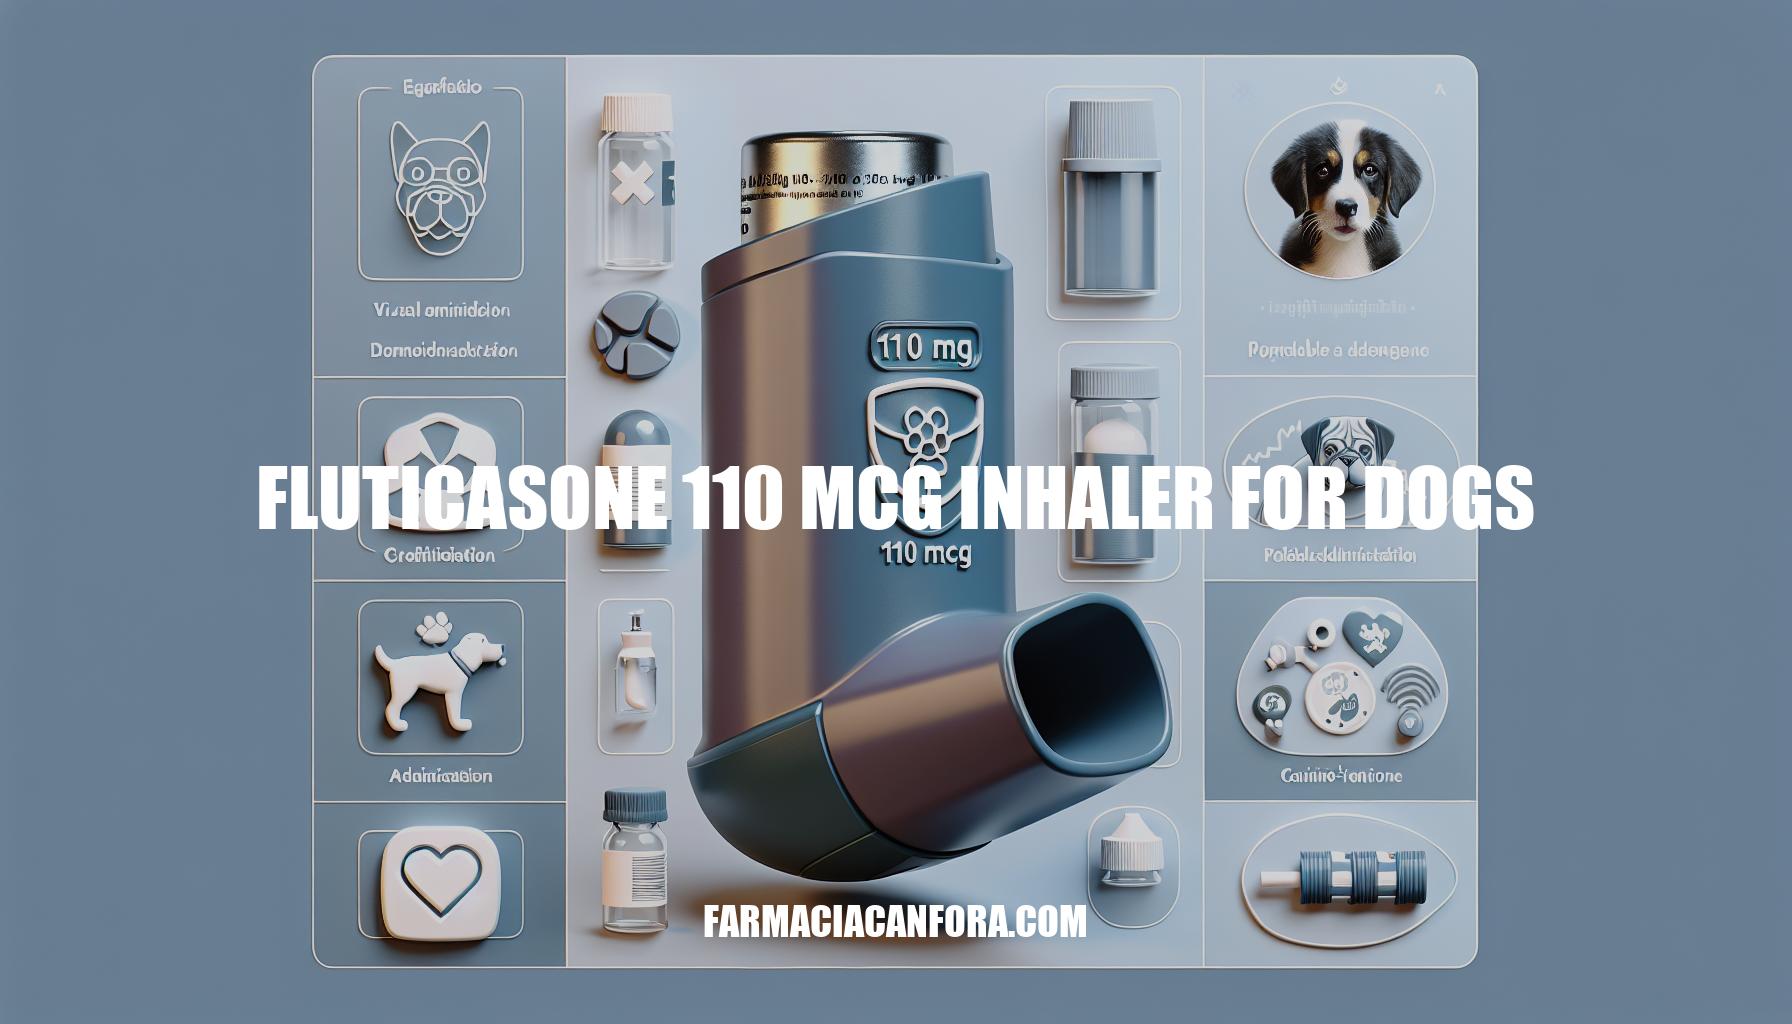 Fluticasone 110 mcg Inhaler for Dogs: A Comprehensive Guide